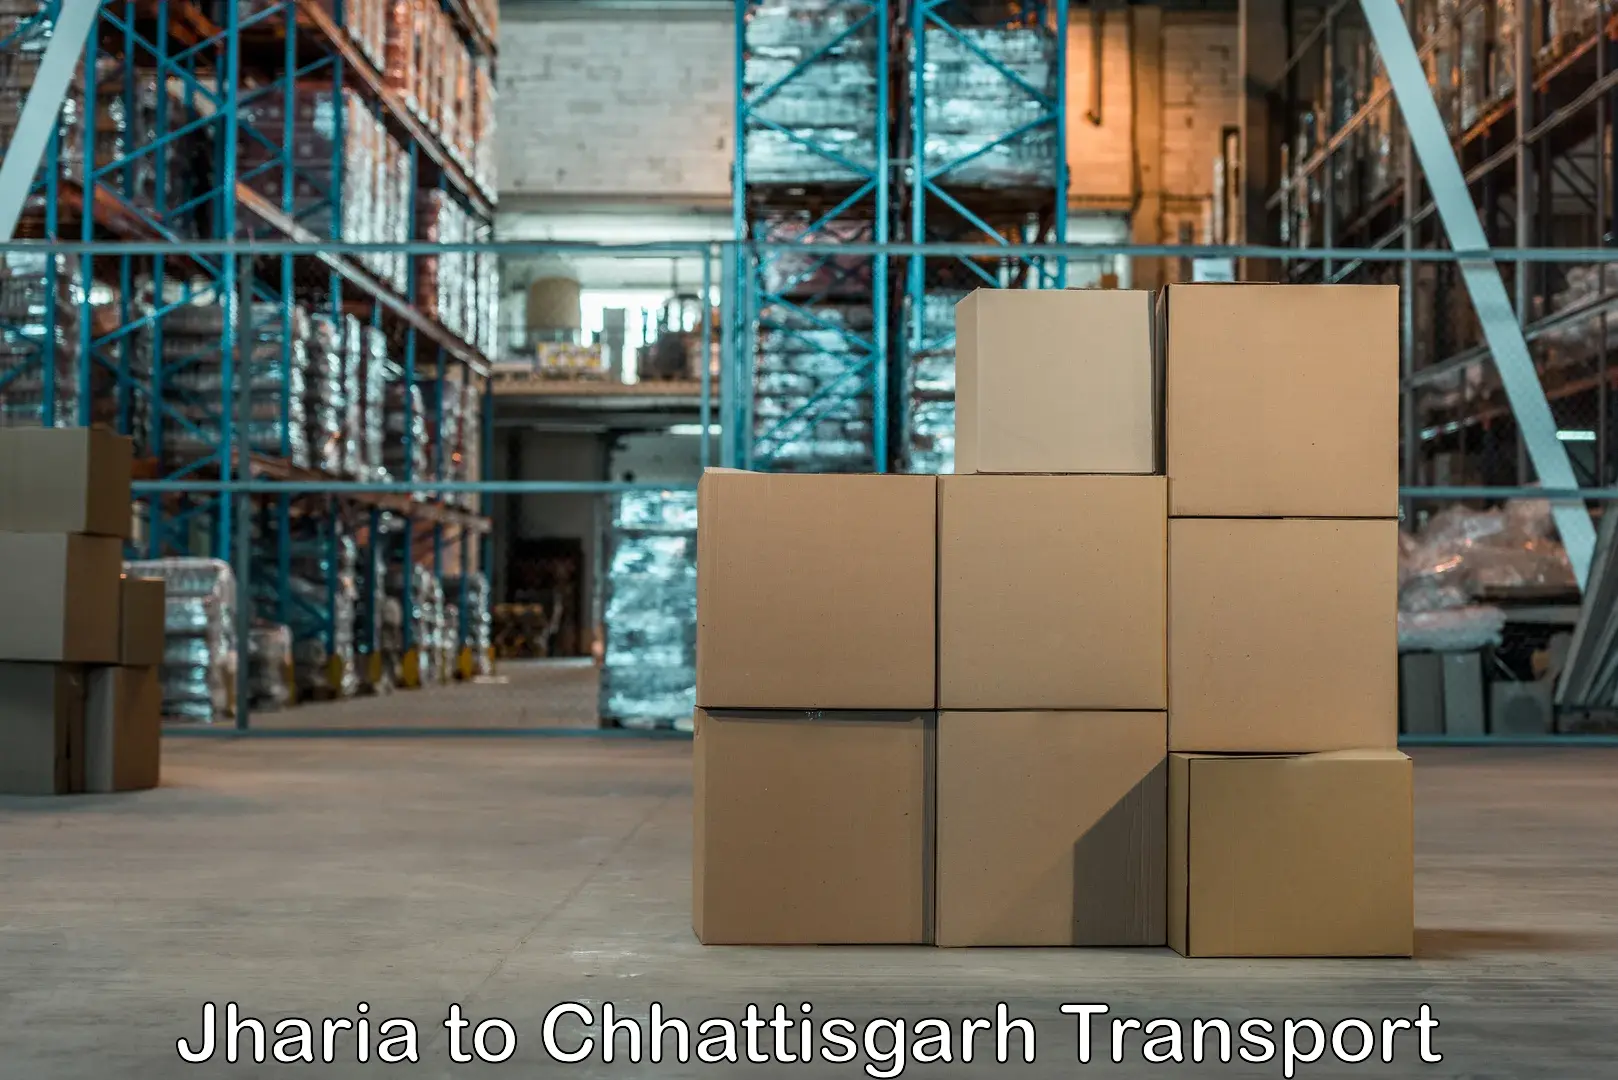 Daily transport service Jharia to Chhattisgarh